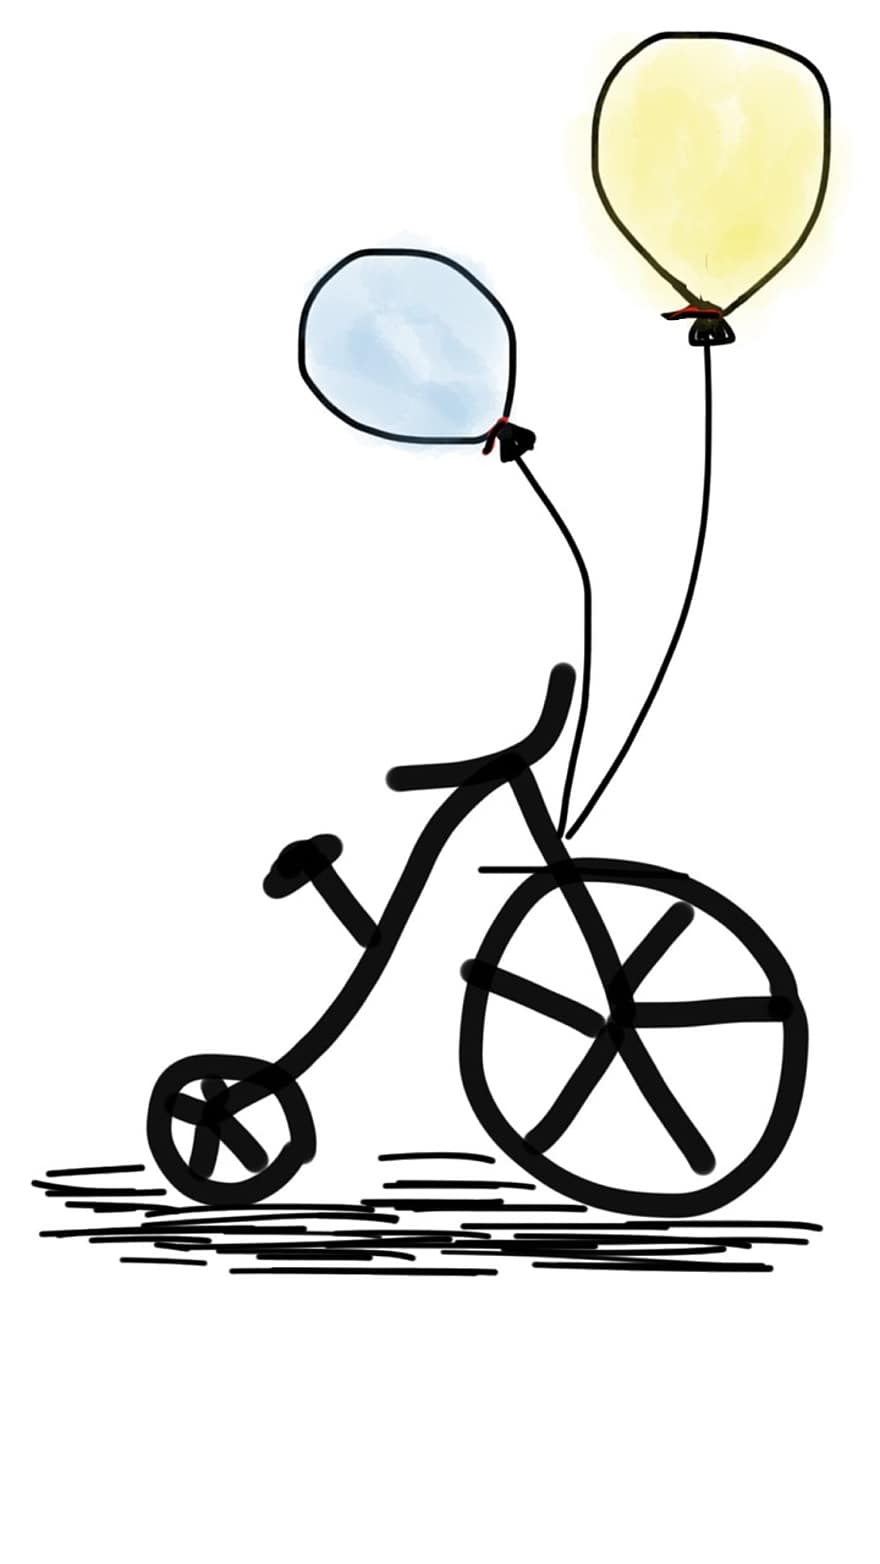 bicyclette, vélo, ballon, ballon jaune, ballon bleu, mode de vie, faire du vélo, Cyclisme, cyclisme, sport, balade